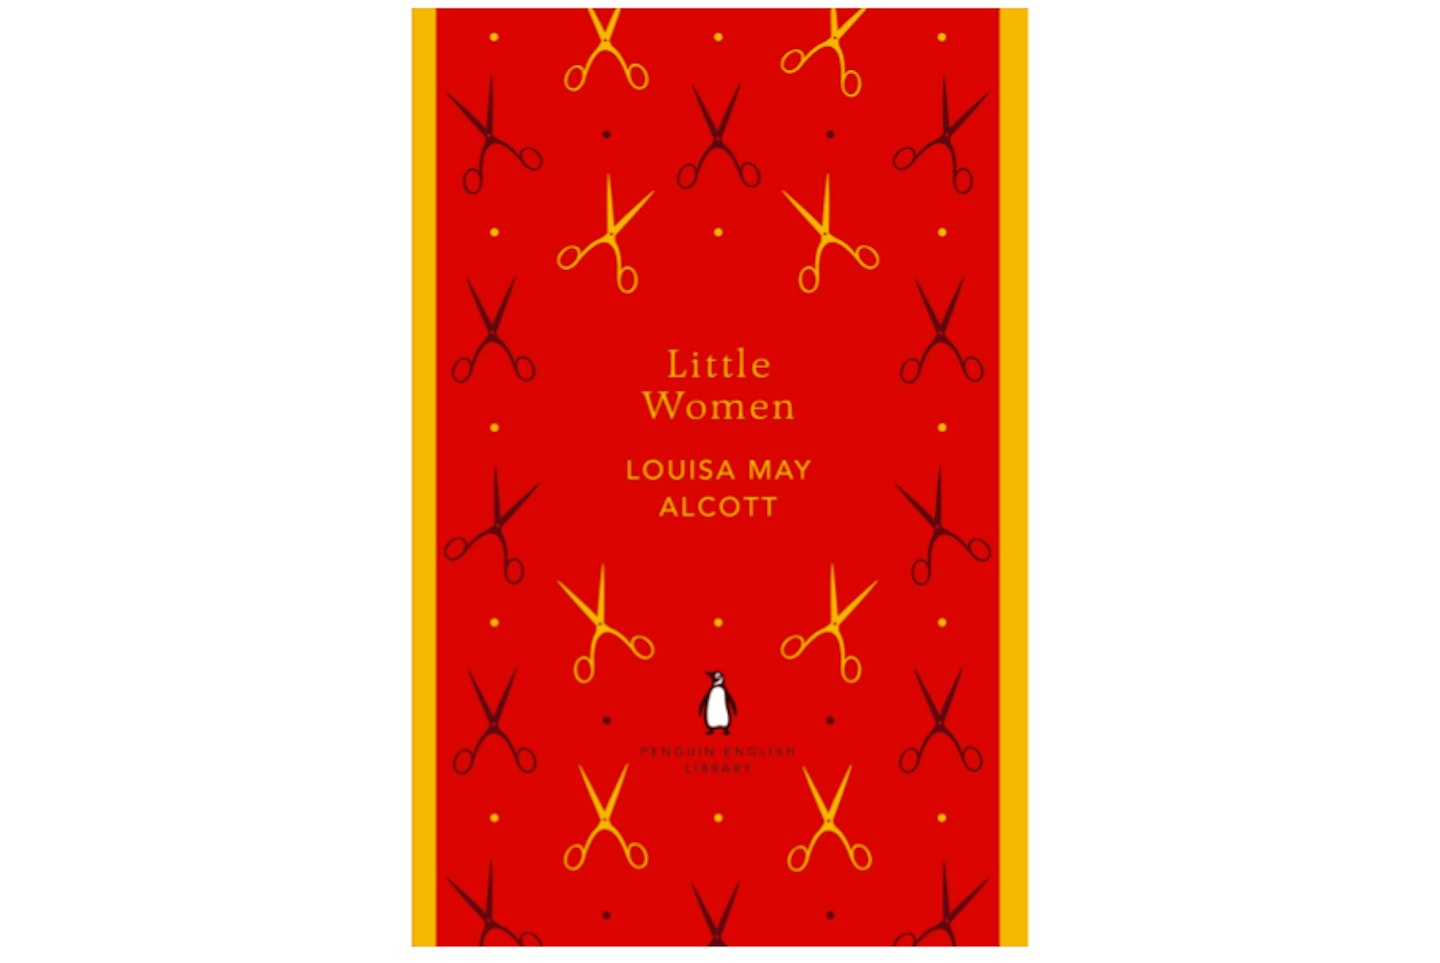 Little Women by Louisa May Alcott, £6.50